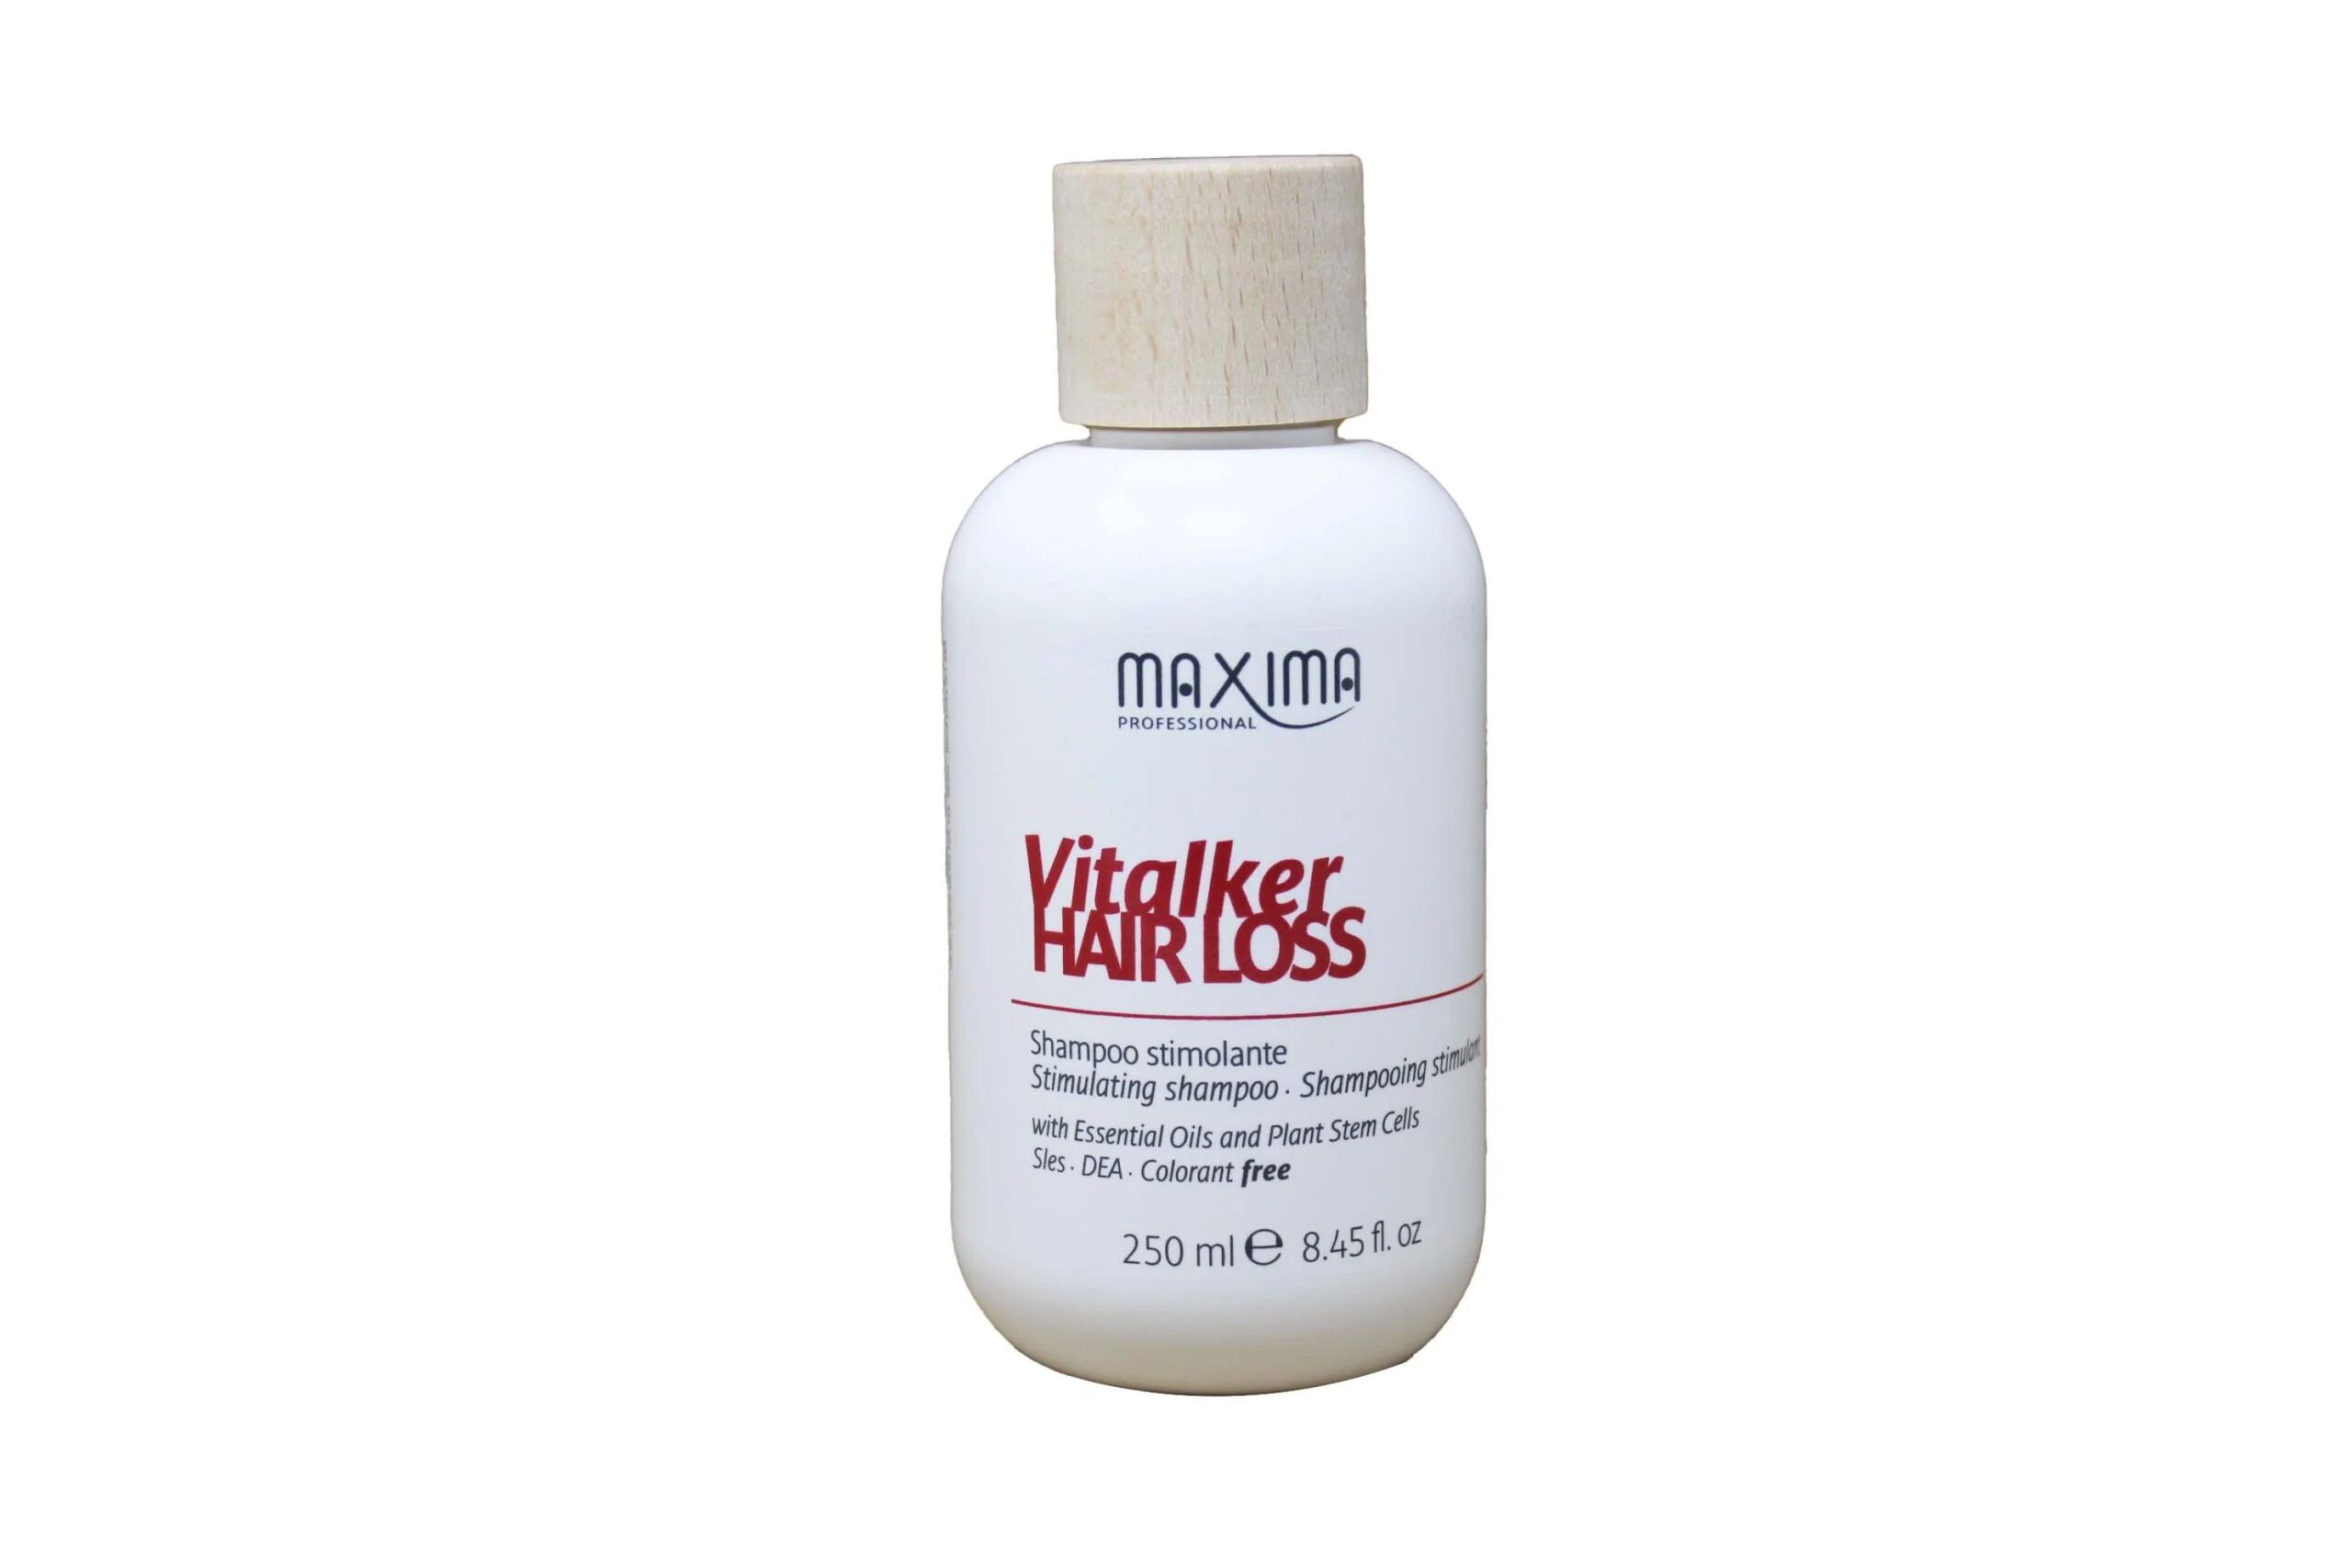 maxima professional maxima vitalker hair loss shampoo stimolante per capelli anticaduta 250 ml